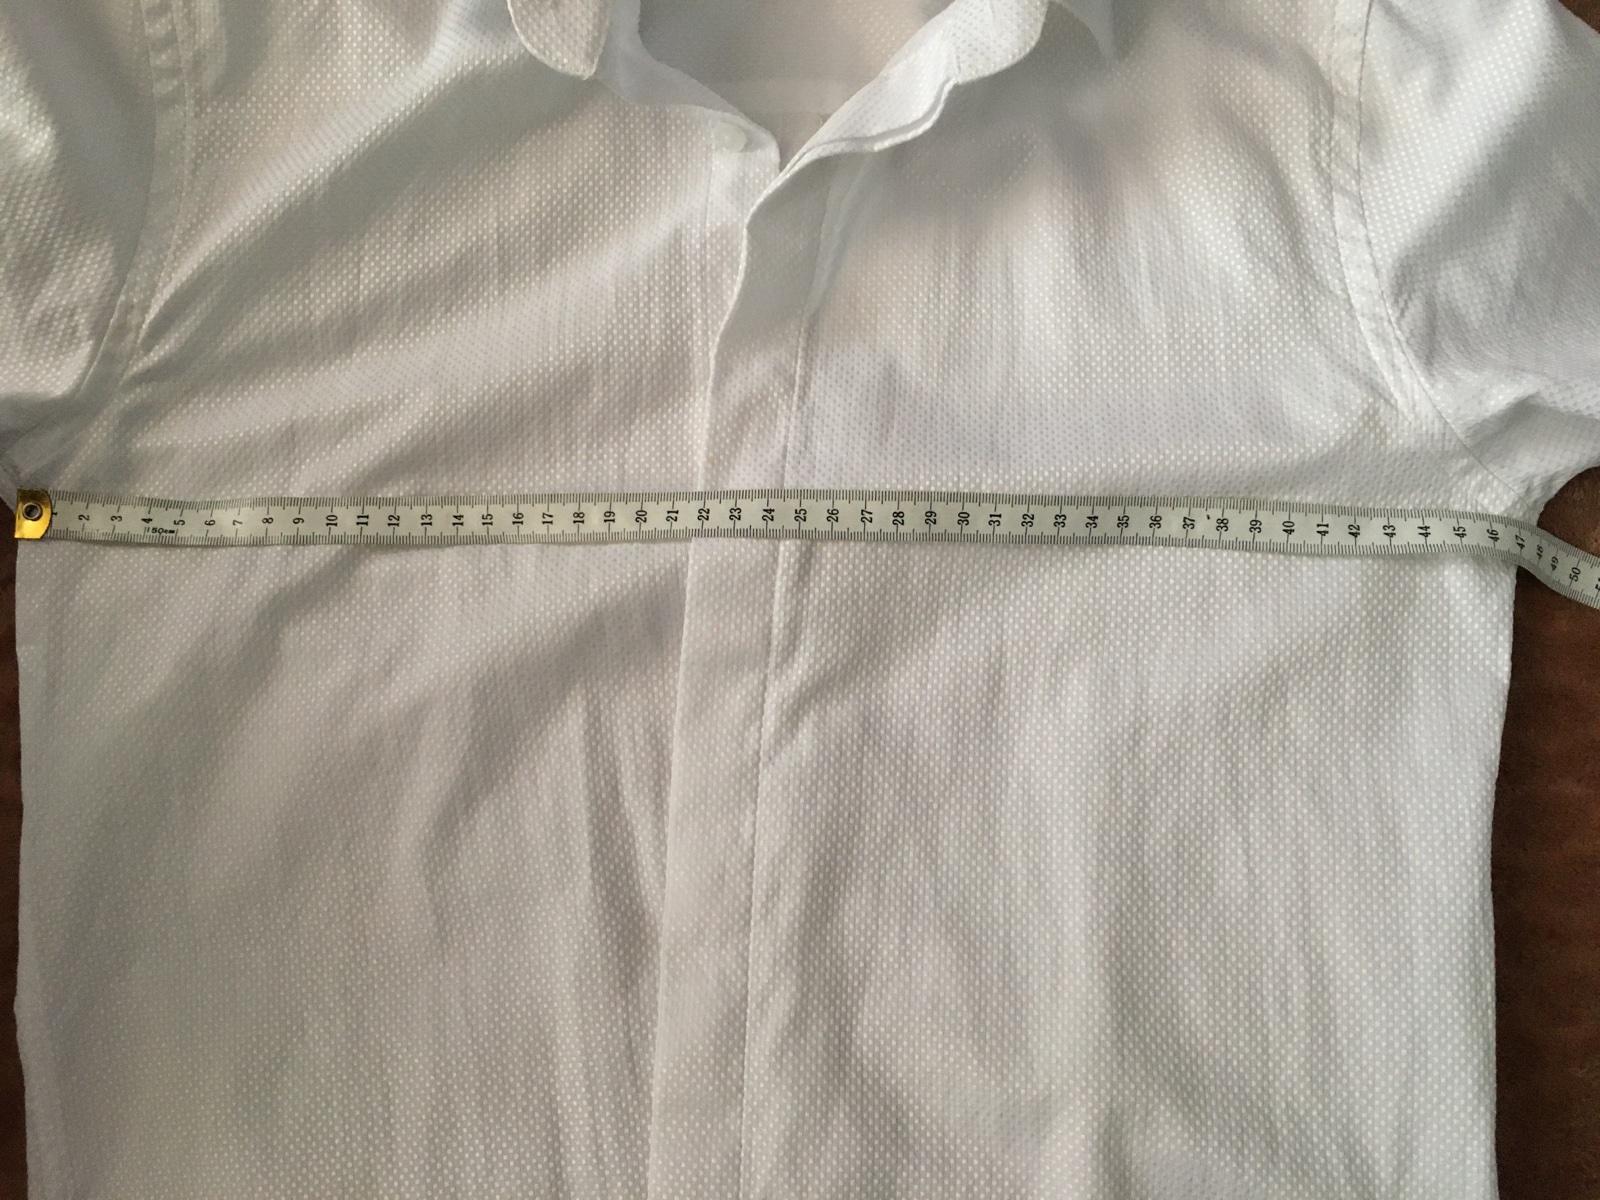 Biela košeľa - Obrázok č. 2